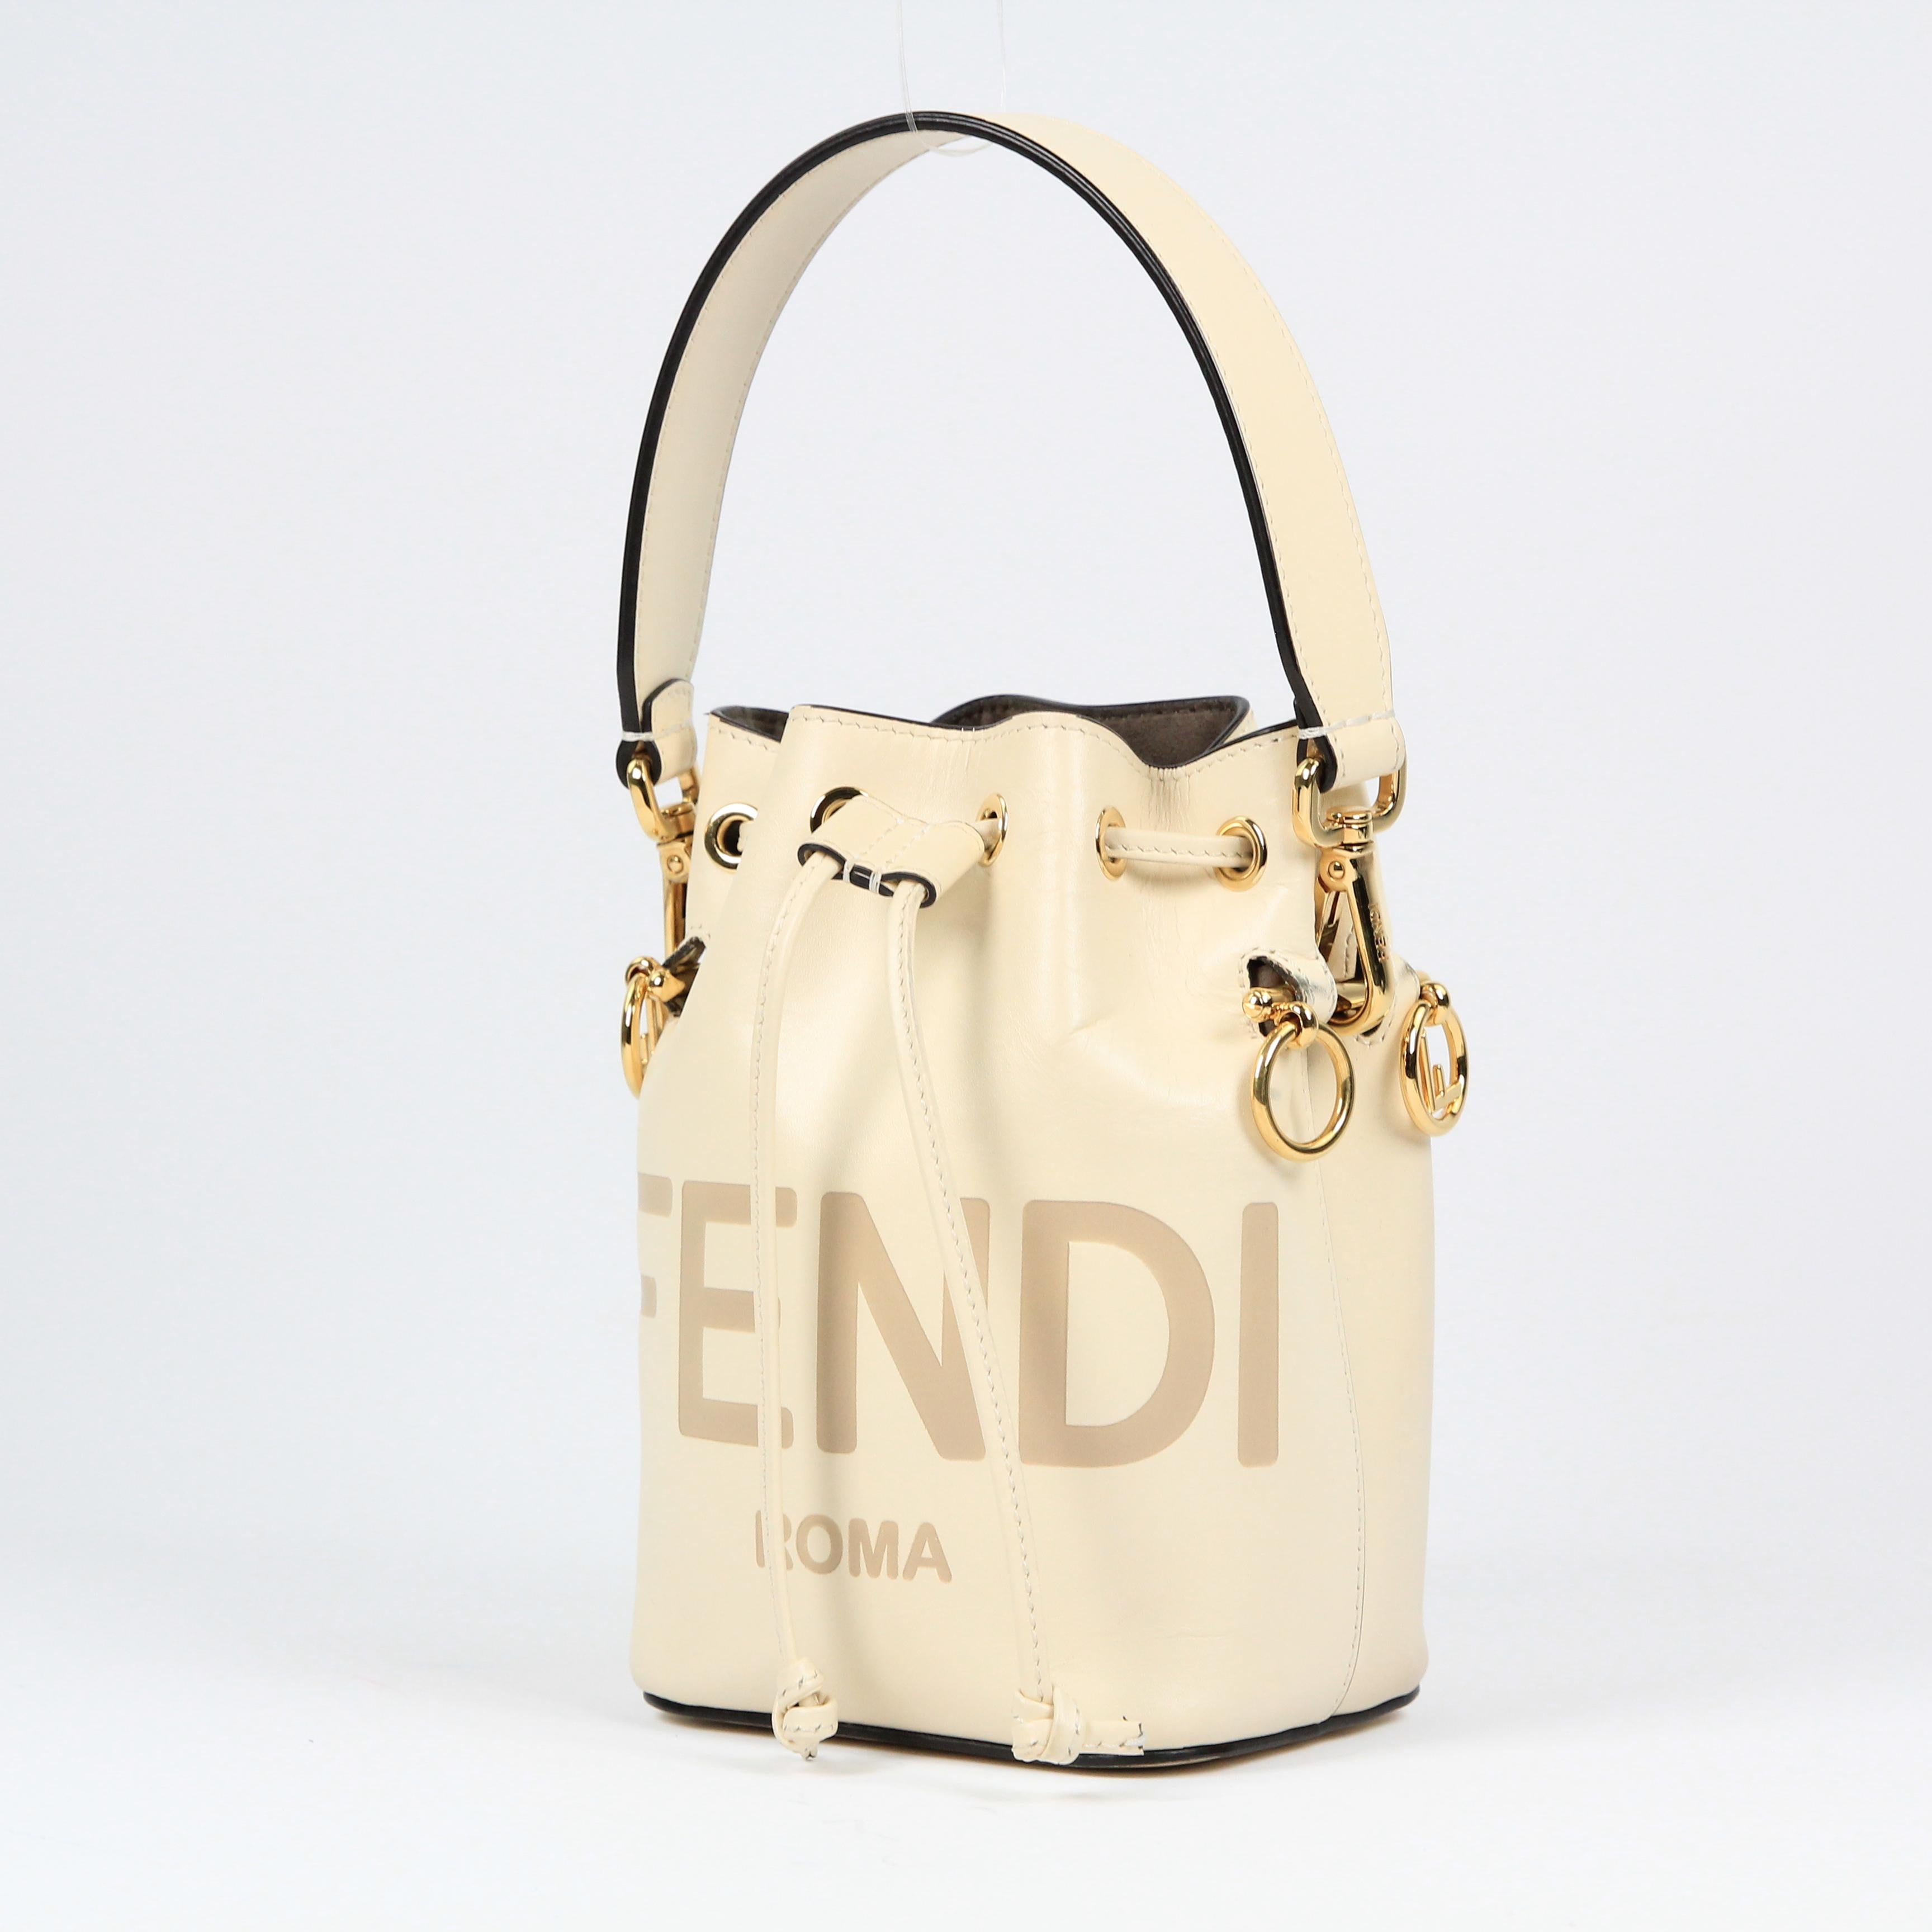 Fendi Mon Trésor leather handbag For Sale 2